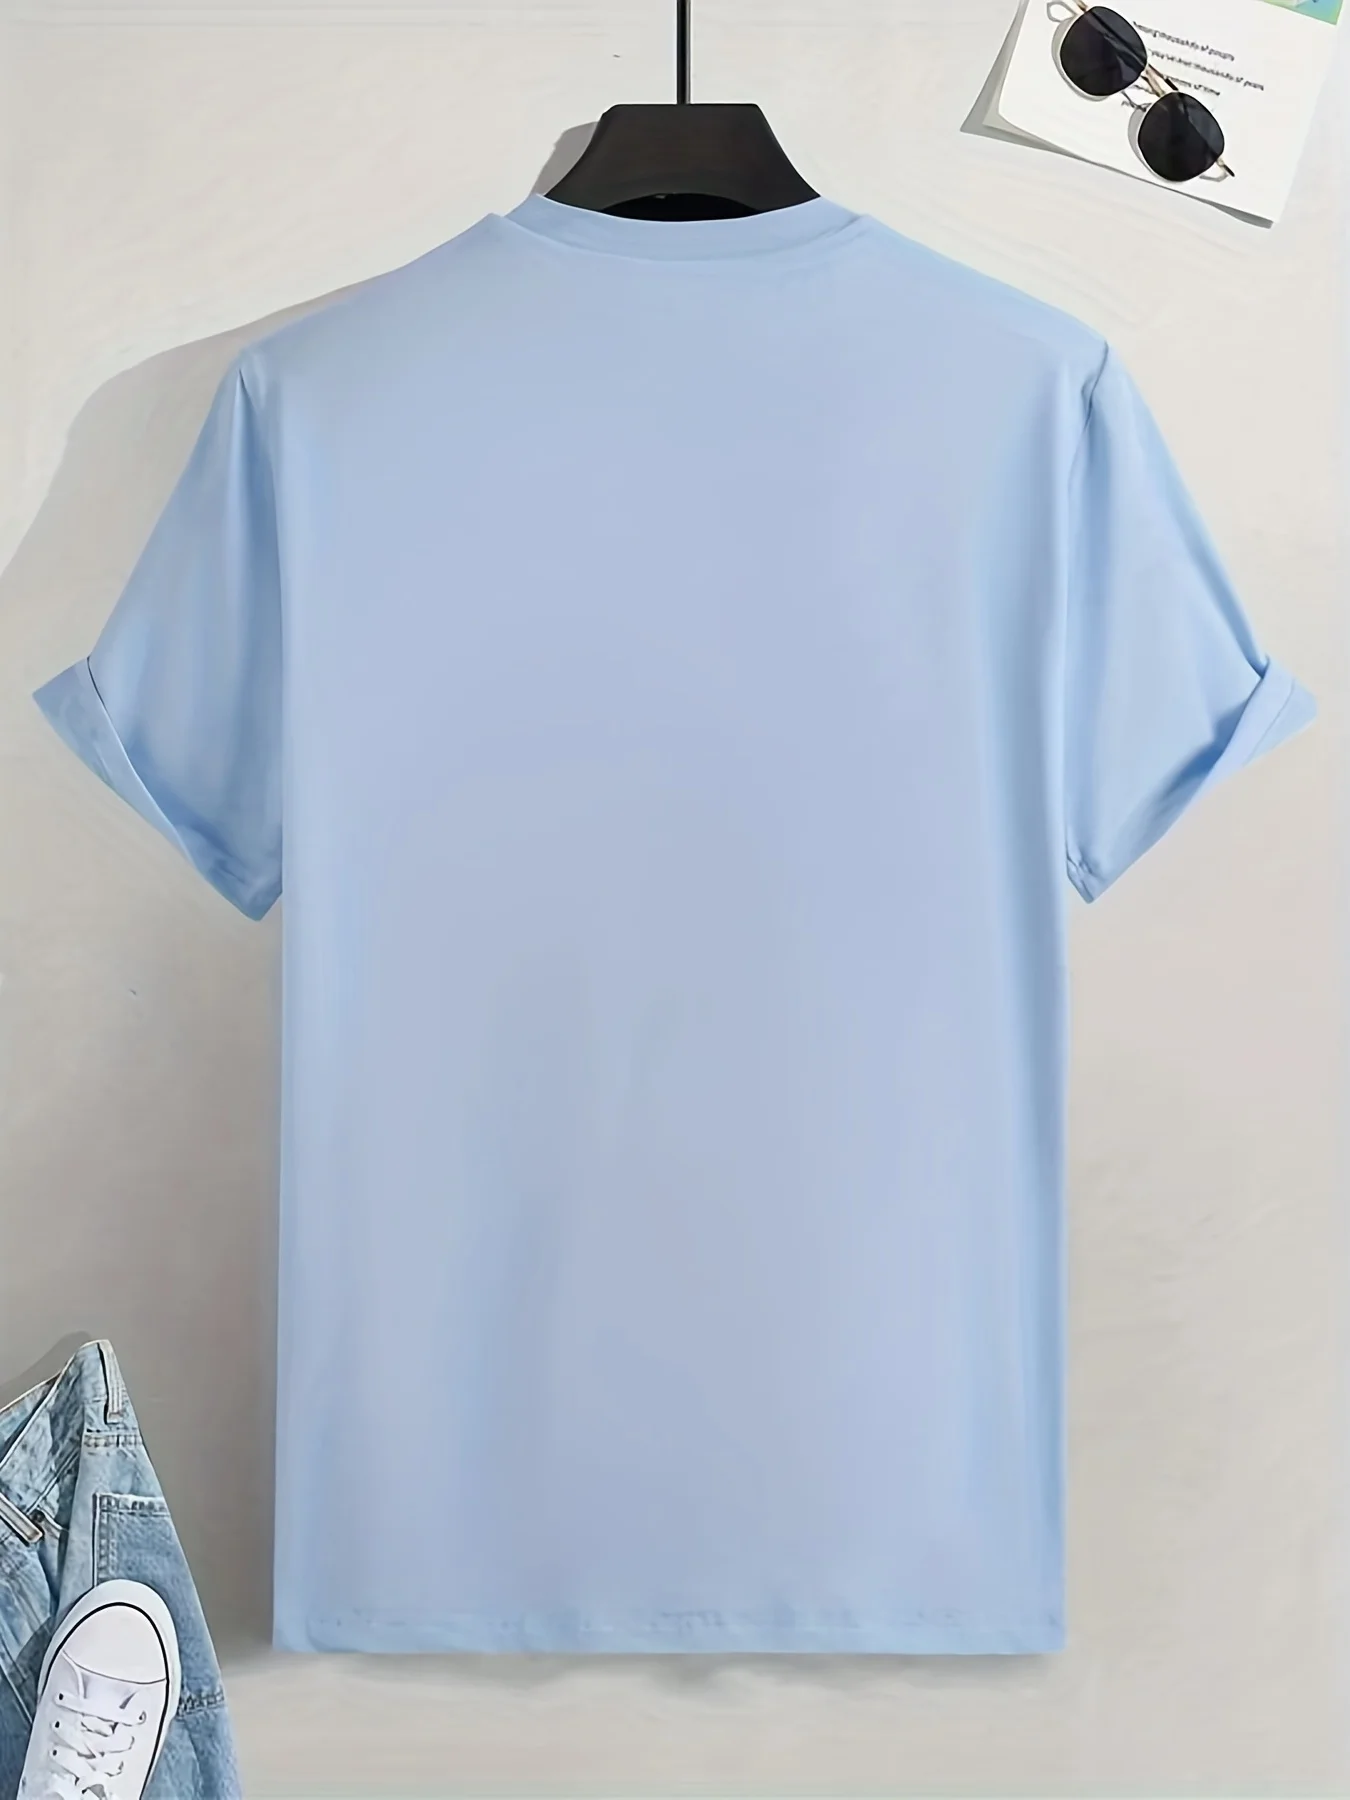 S069ea68fb6ce477d942afc0d14a3dca9L Men's 100 Cotton Paris Short Sleeve T-shirt Top Loose Tshirt